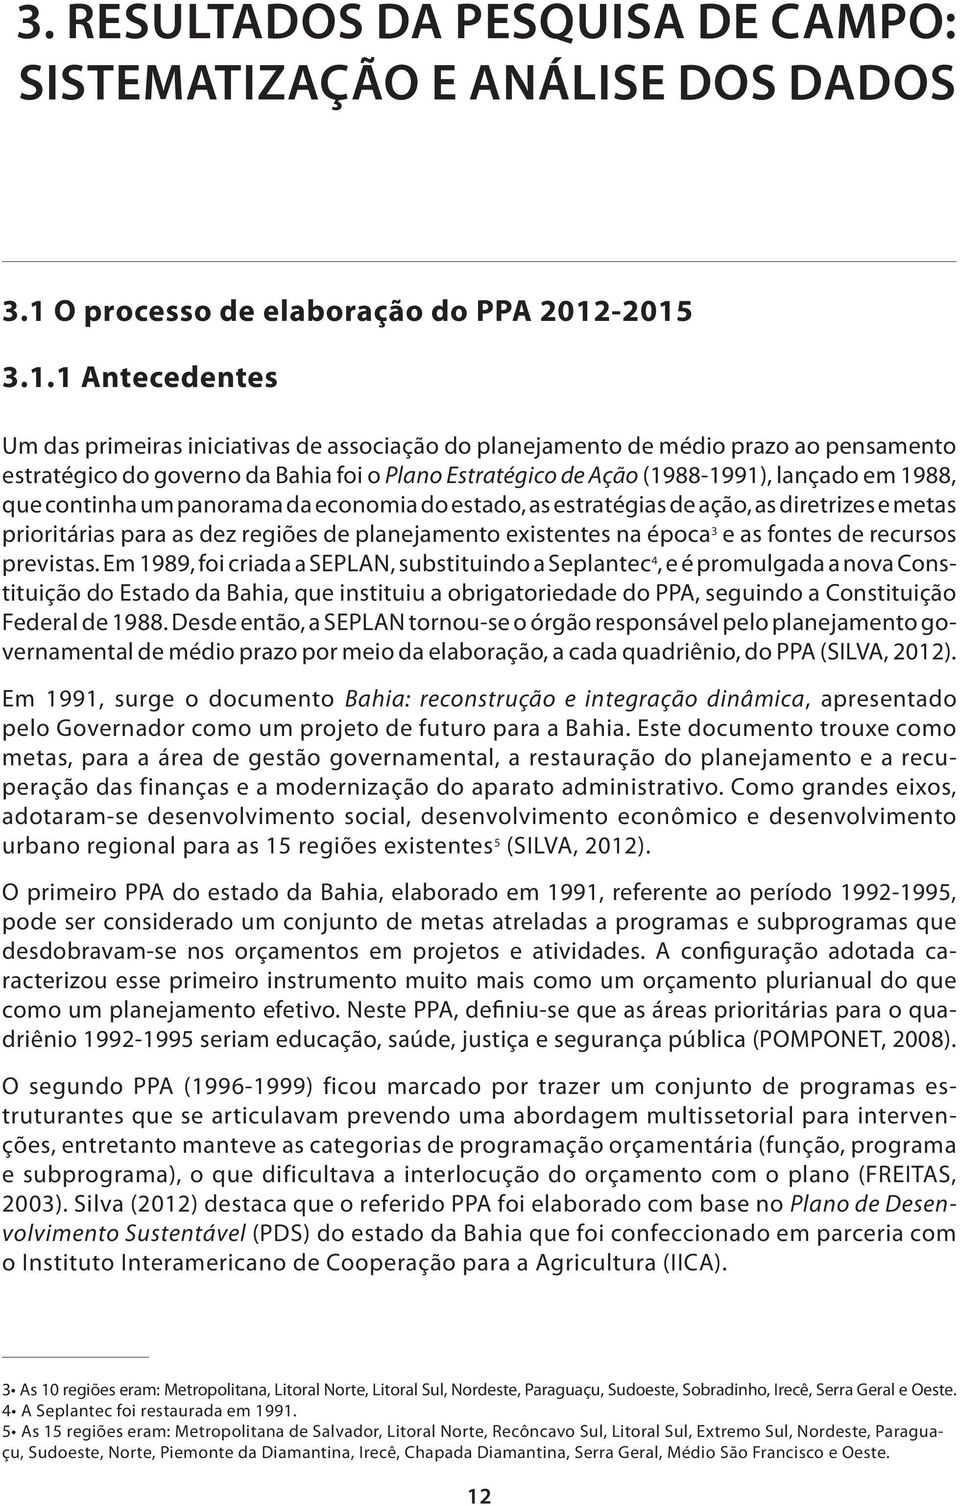 -2015 3.1.1 Antecedentes Um das primeiras iniciativas de associação do planejamento de médio prazo ao pensamento estratégico do governo da Bahia foi o Plano Estratégico de Ação (1988-1991), lançado